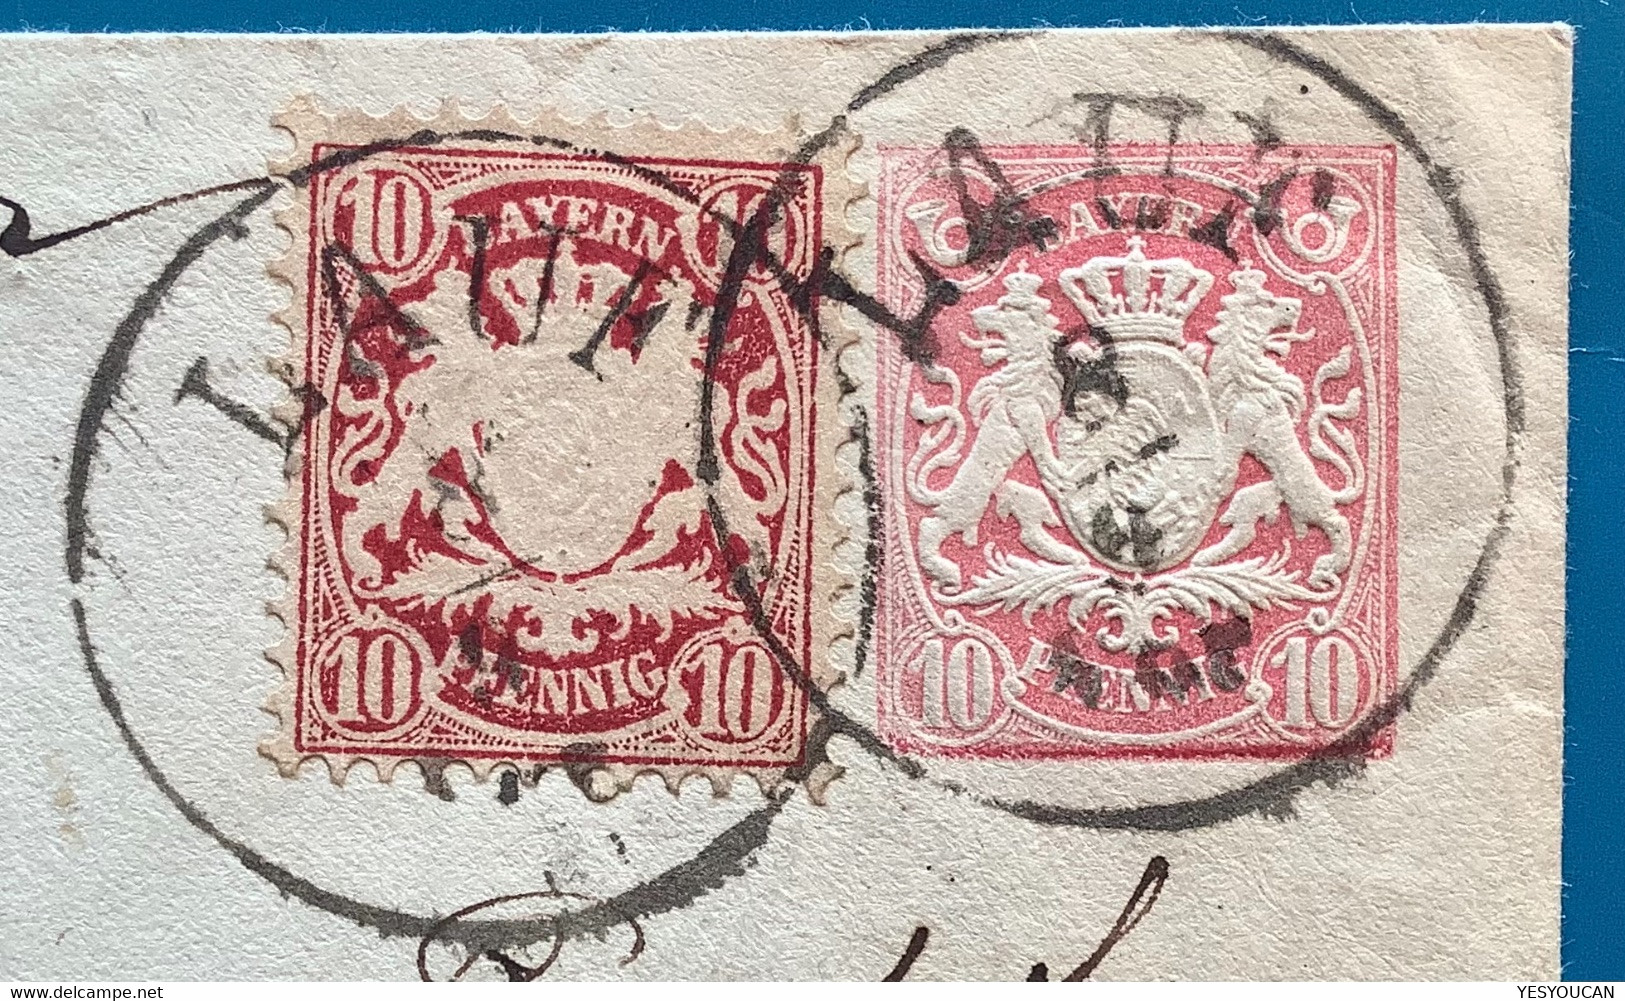 LAUF 1876 Ganzsache 10 Pf  U5yK2 +Mi39 SELTEN>Paris France (Bayern An Der Pegnitz Mittelfranken Postal Stationery Brief - Ganzsachen